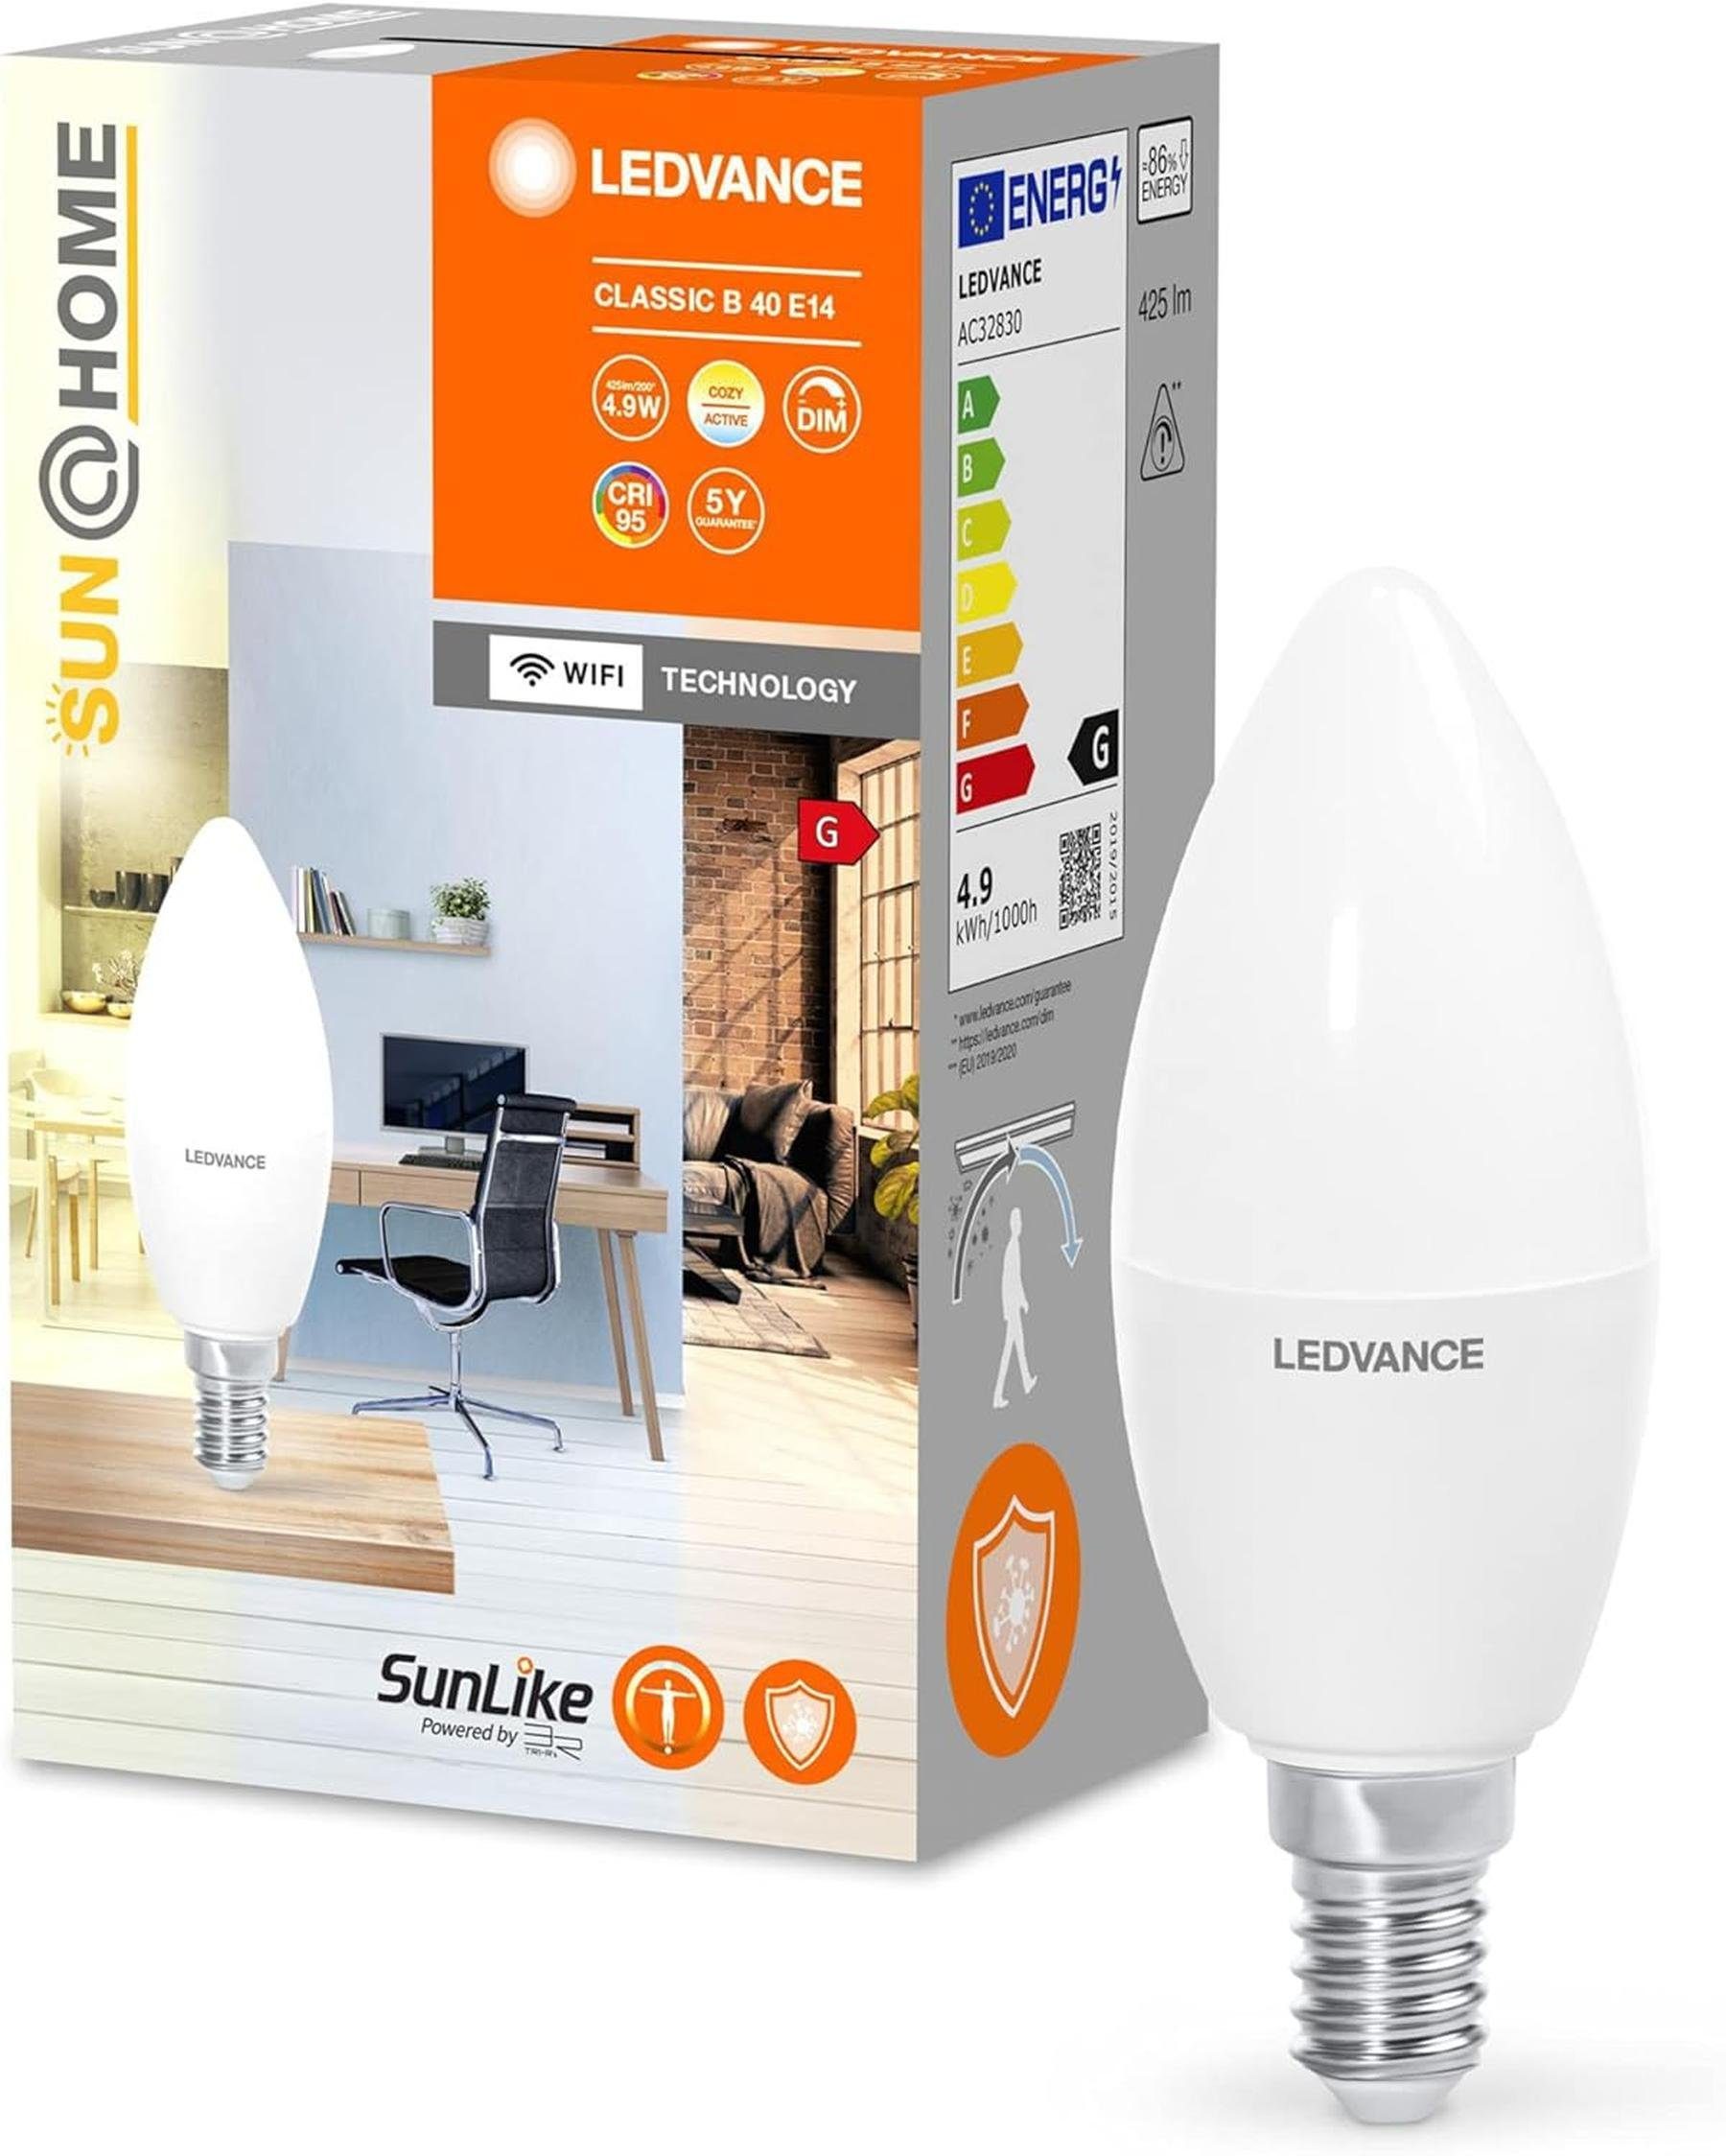 Ledvance LED-Leuchtmittel Smart E14 LED Glühbirne Kerze 4,9W dimmbar 425lm 5000K CRI, E14, Tunable White, Dimmbar, Energiesparend, Farbwechsel, Mattiert, App-Steuerung